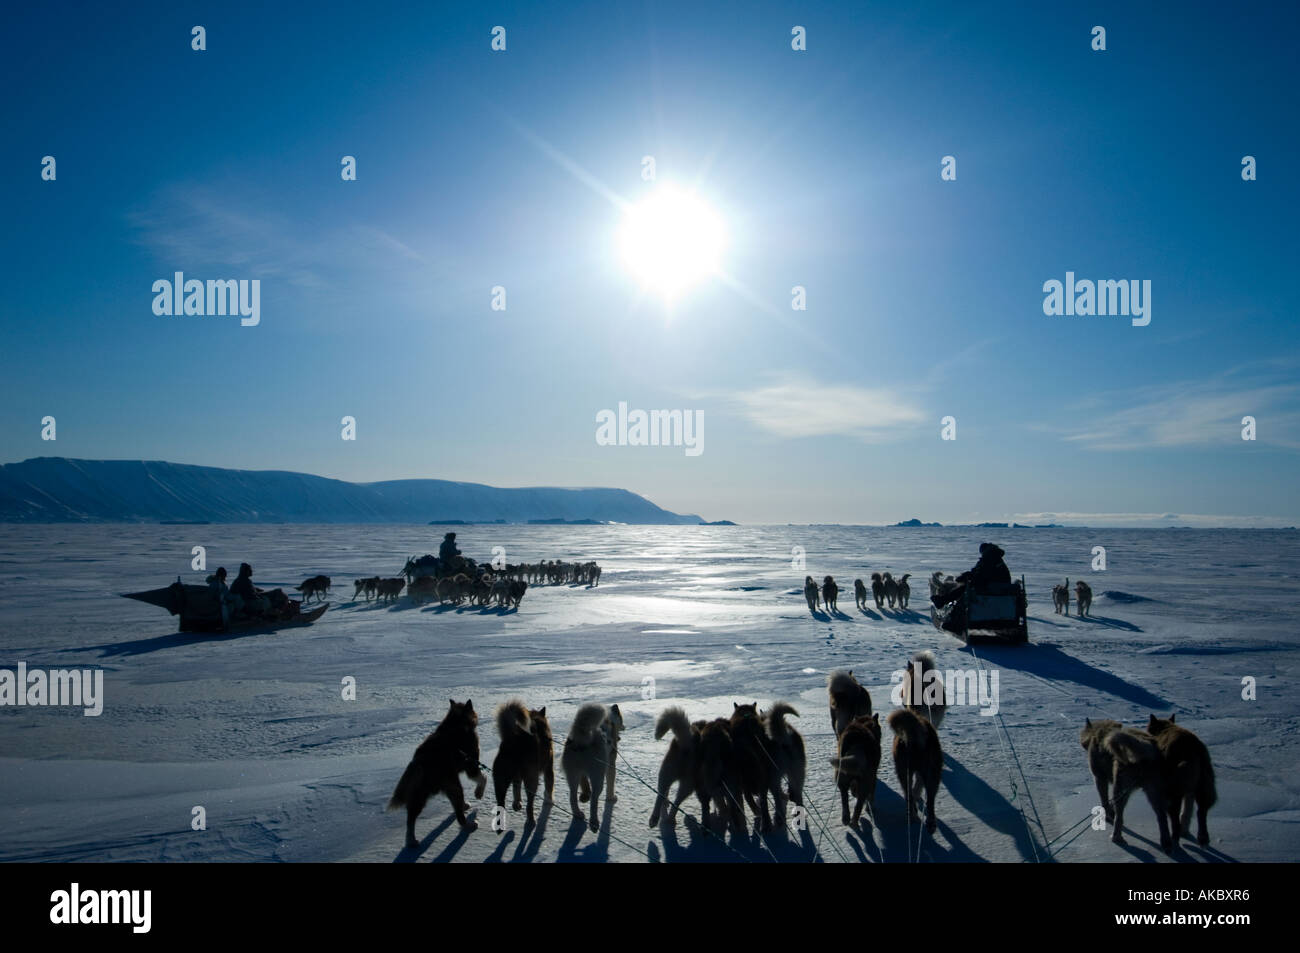 Les équipes de chiens du Groenland Qaanaaq et les chasseurs inuits voyageant hors de chasser au printemps pendant la période du soleil de minuit Banque D'Images